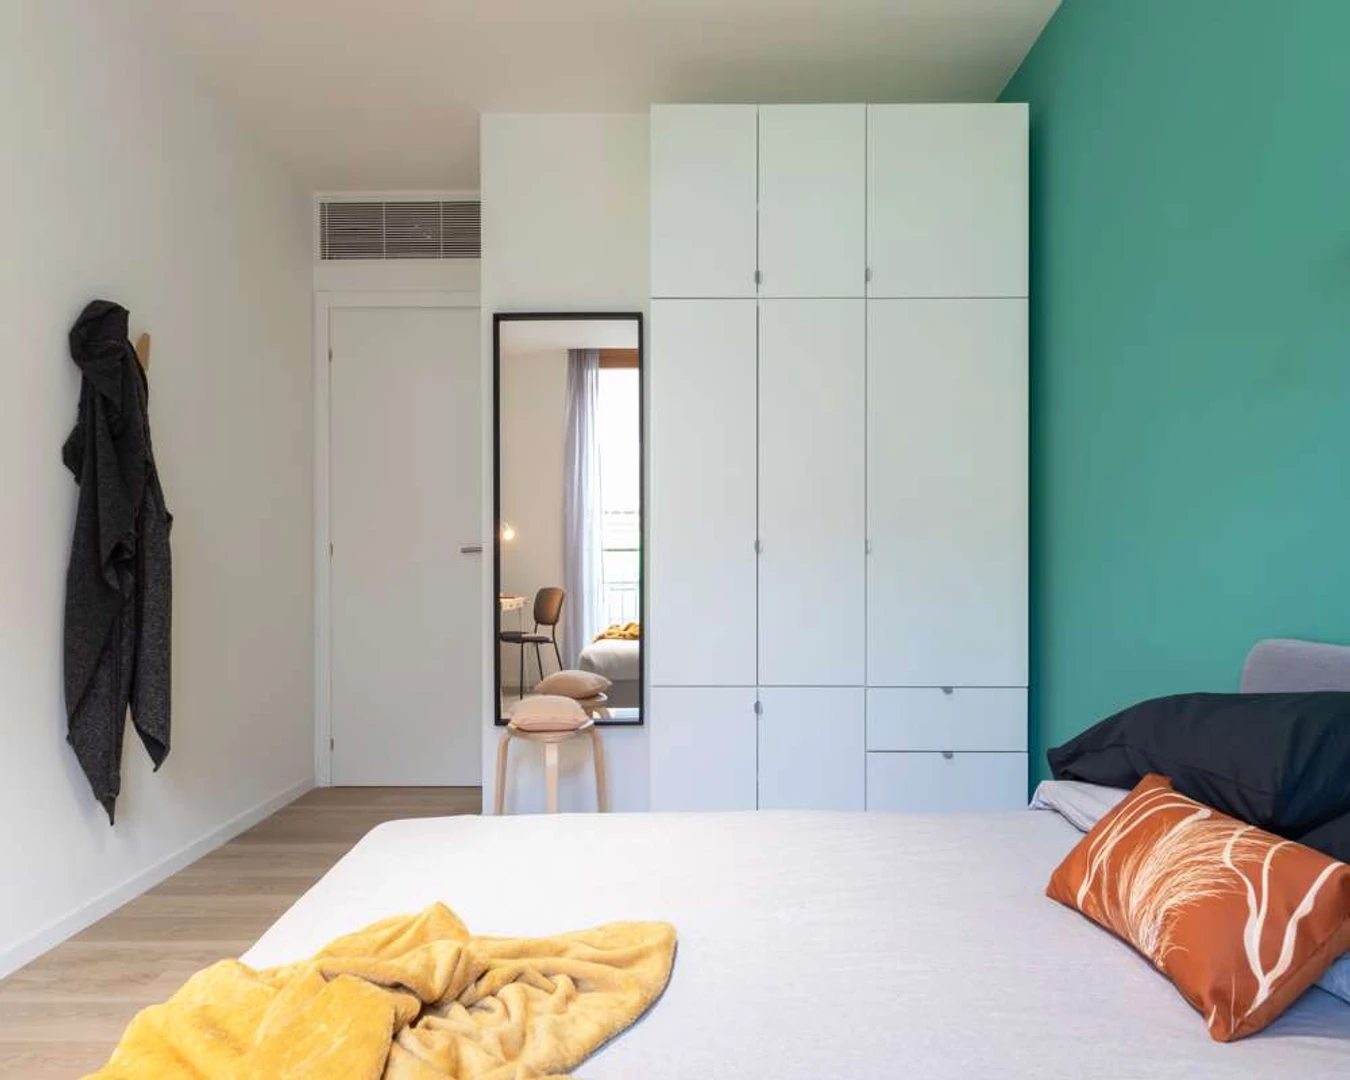 Alquiler de habitación en piso compartido en Trento